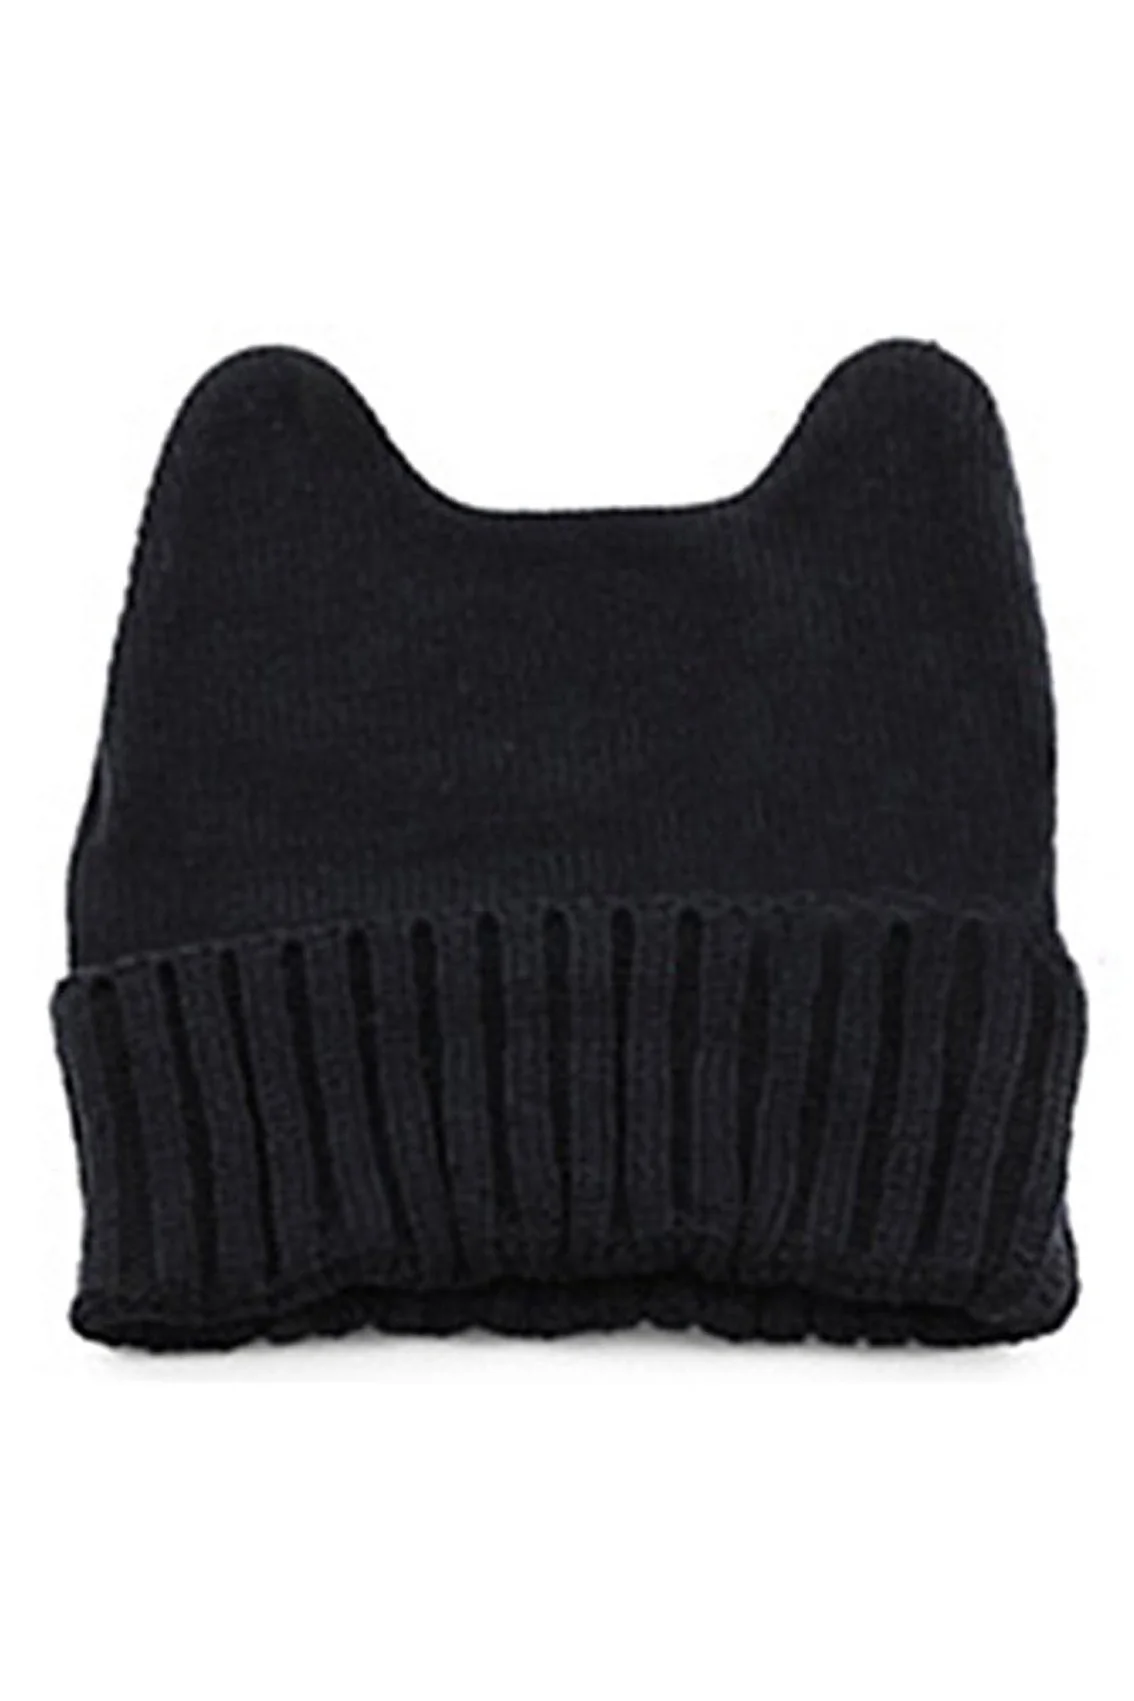 МОК Для женщин теплая зима Кот уха Форма вязаная шапка черный